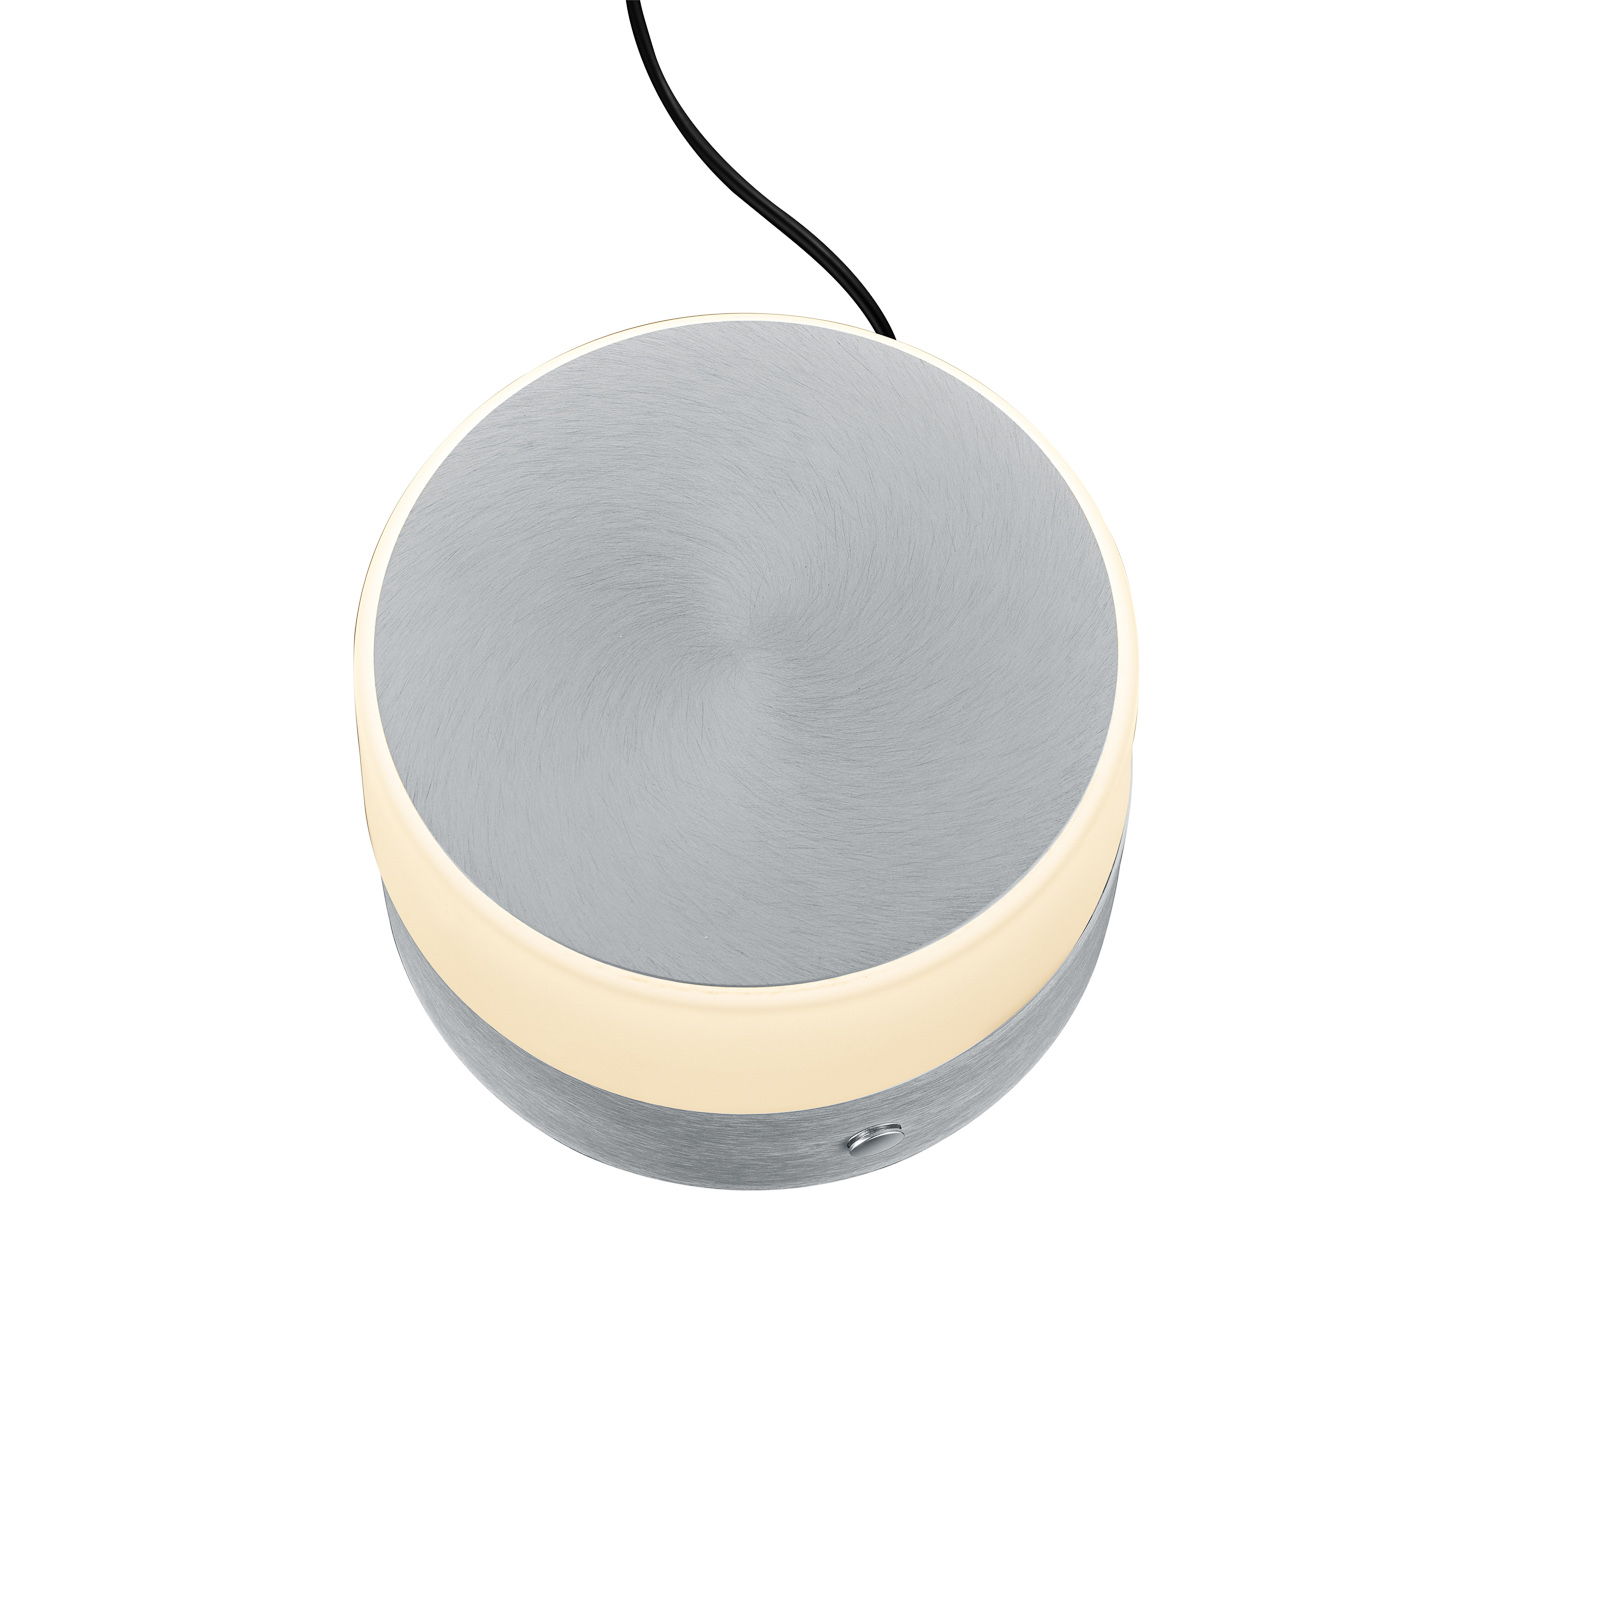 BANKAMP Button stolná LED lampa výška 11 cm hliník